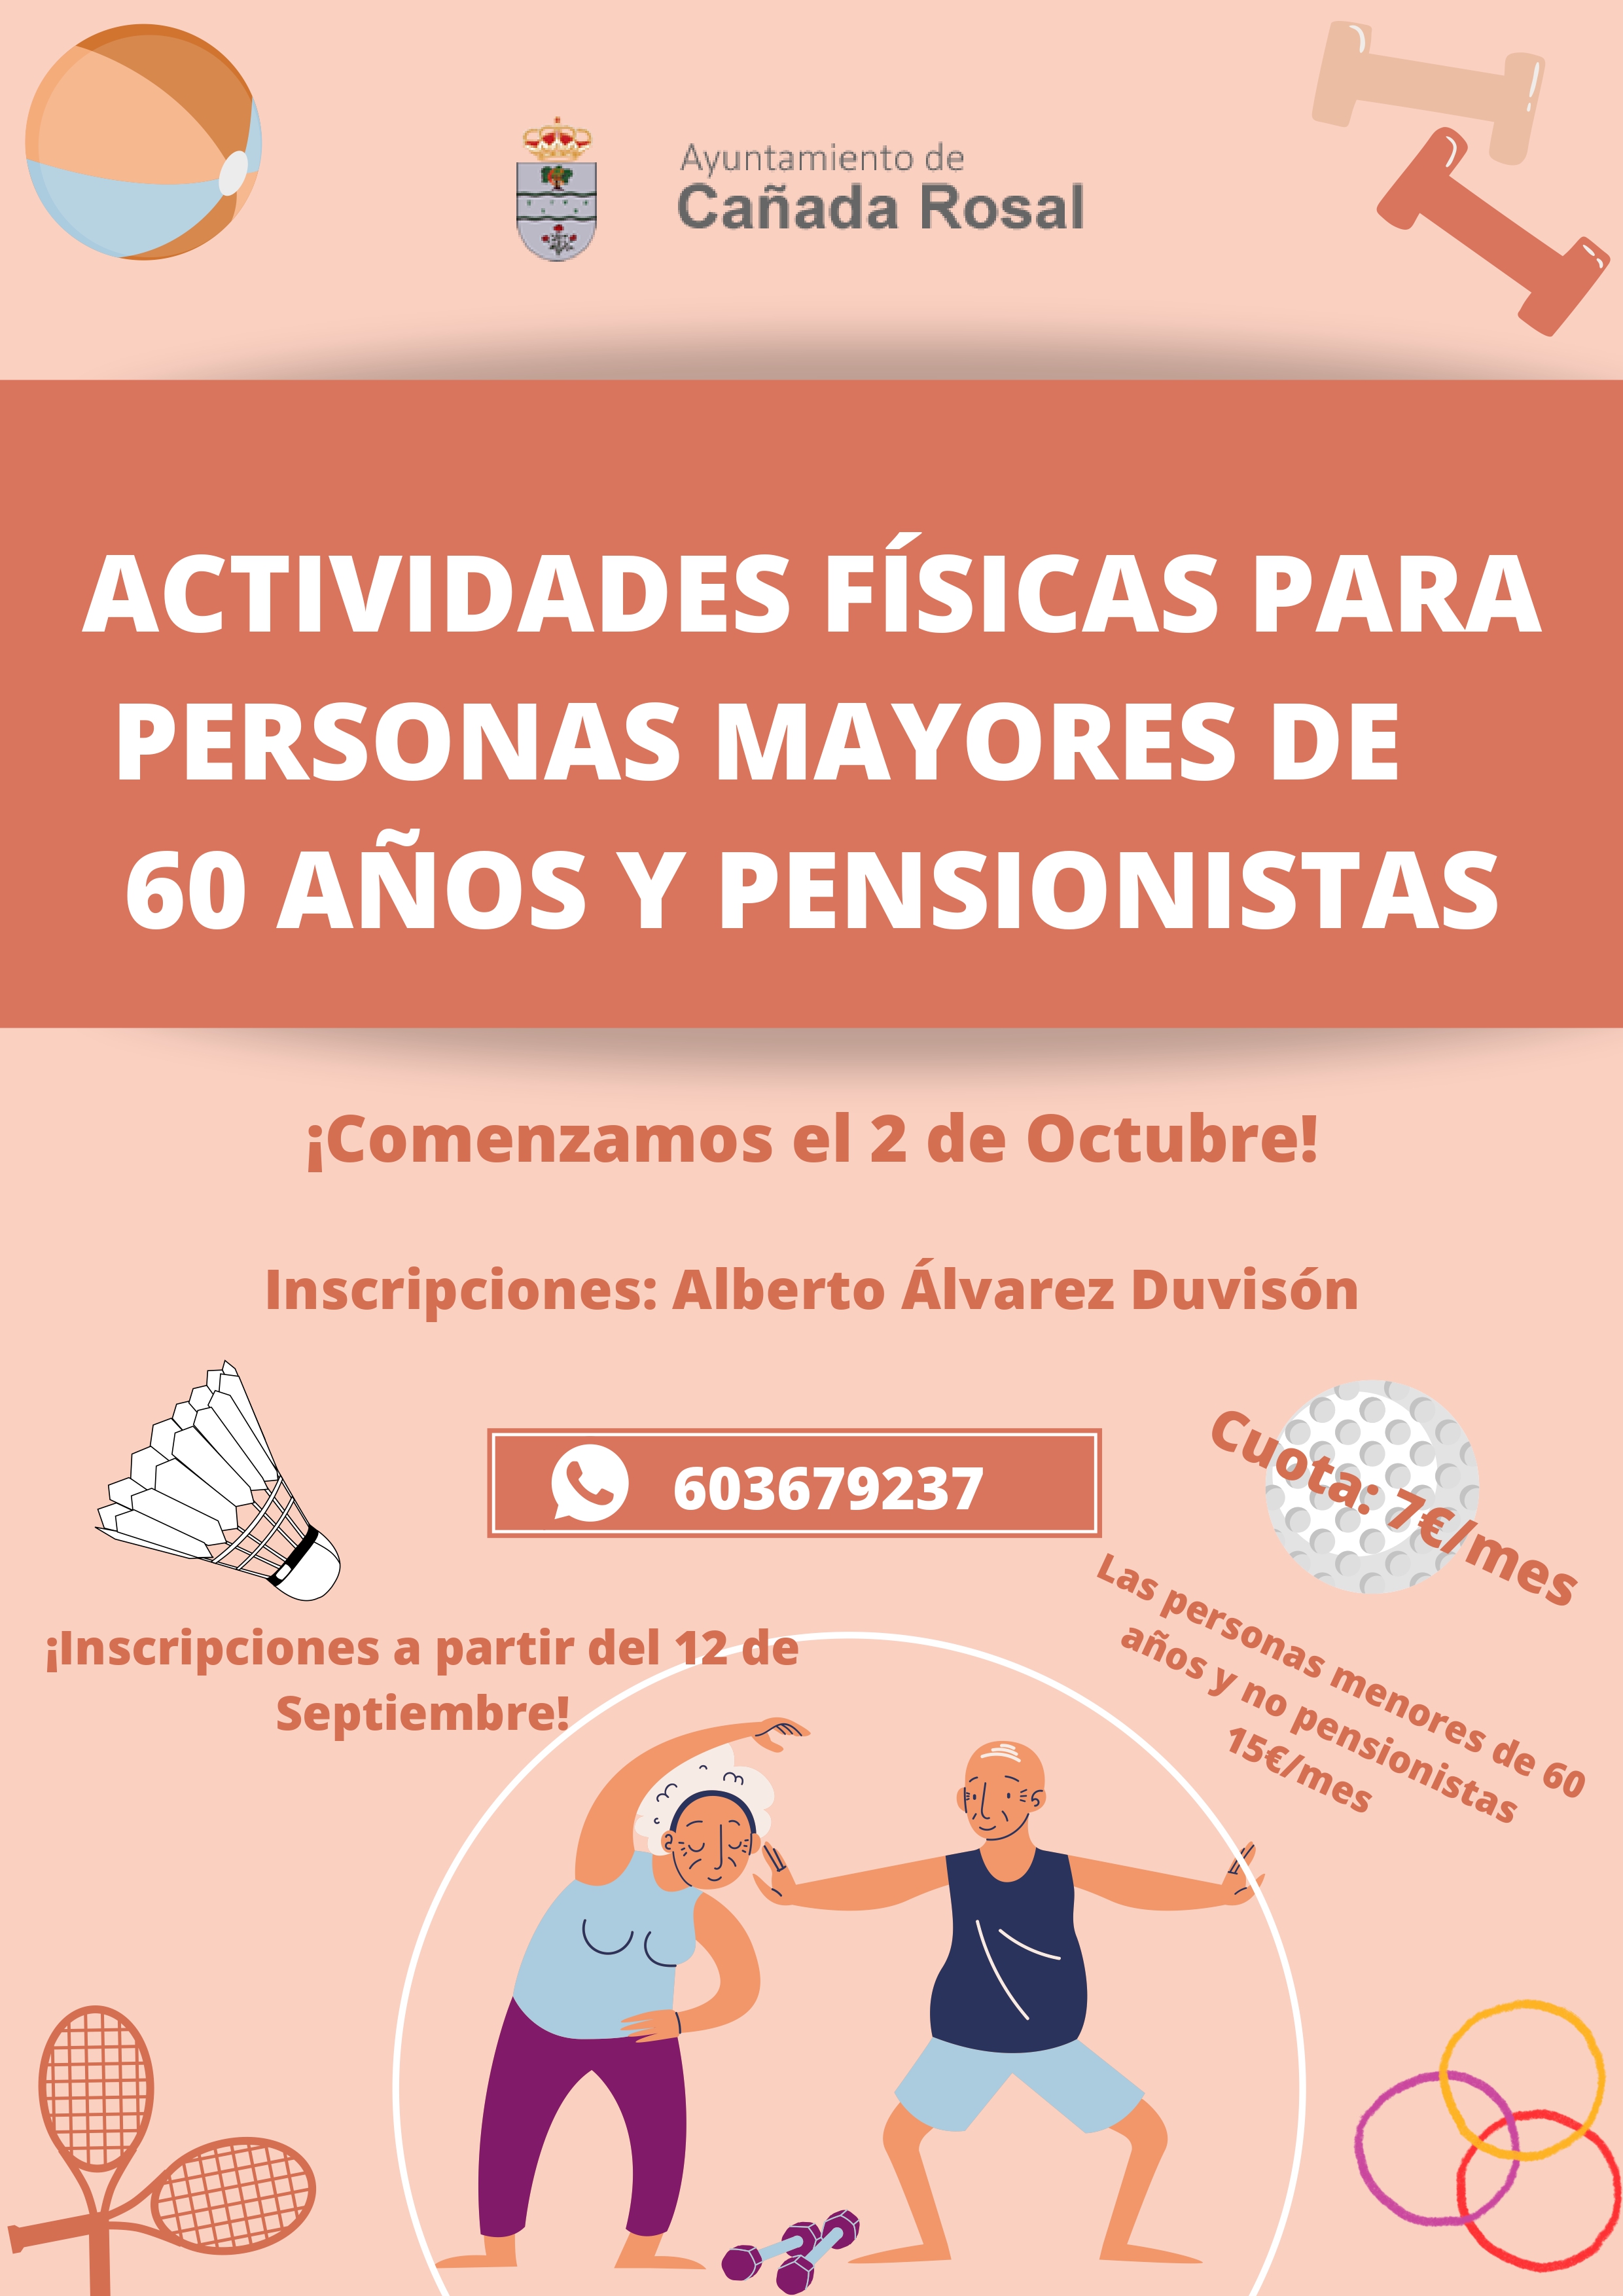 ACTIVIDADES FÍSICAS PARA PERSONAS MAYORES DE 60 AÑOS (4)_page-0001